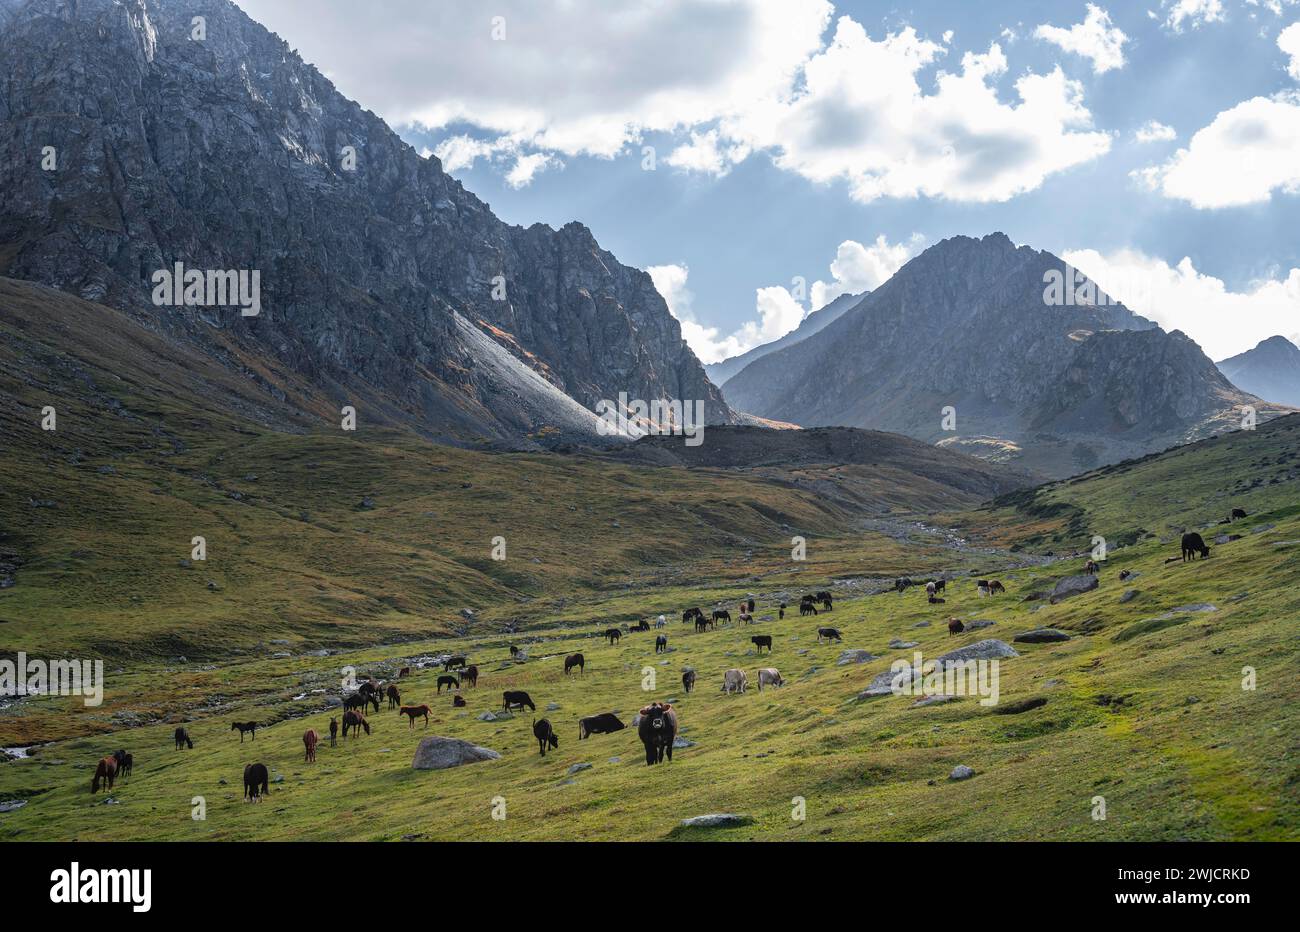 Vaches dans une vallée de montagne dans les montagnes de Tien Shan, près d'Altyn Arashan, Kirghizistan, Asie Banque D'Images